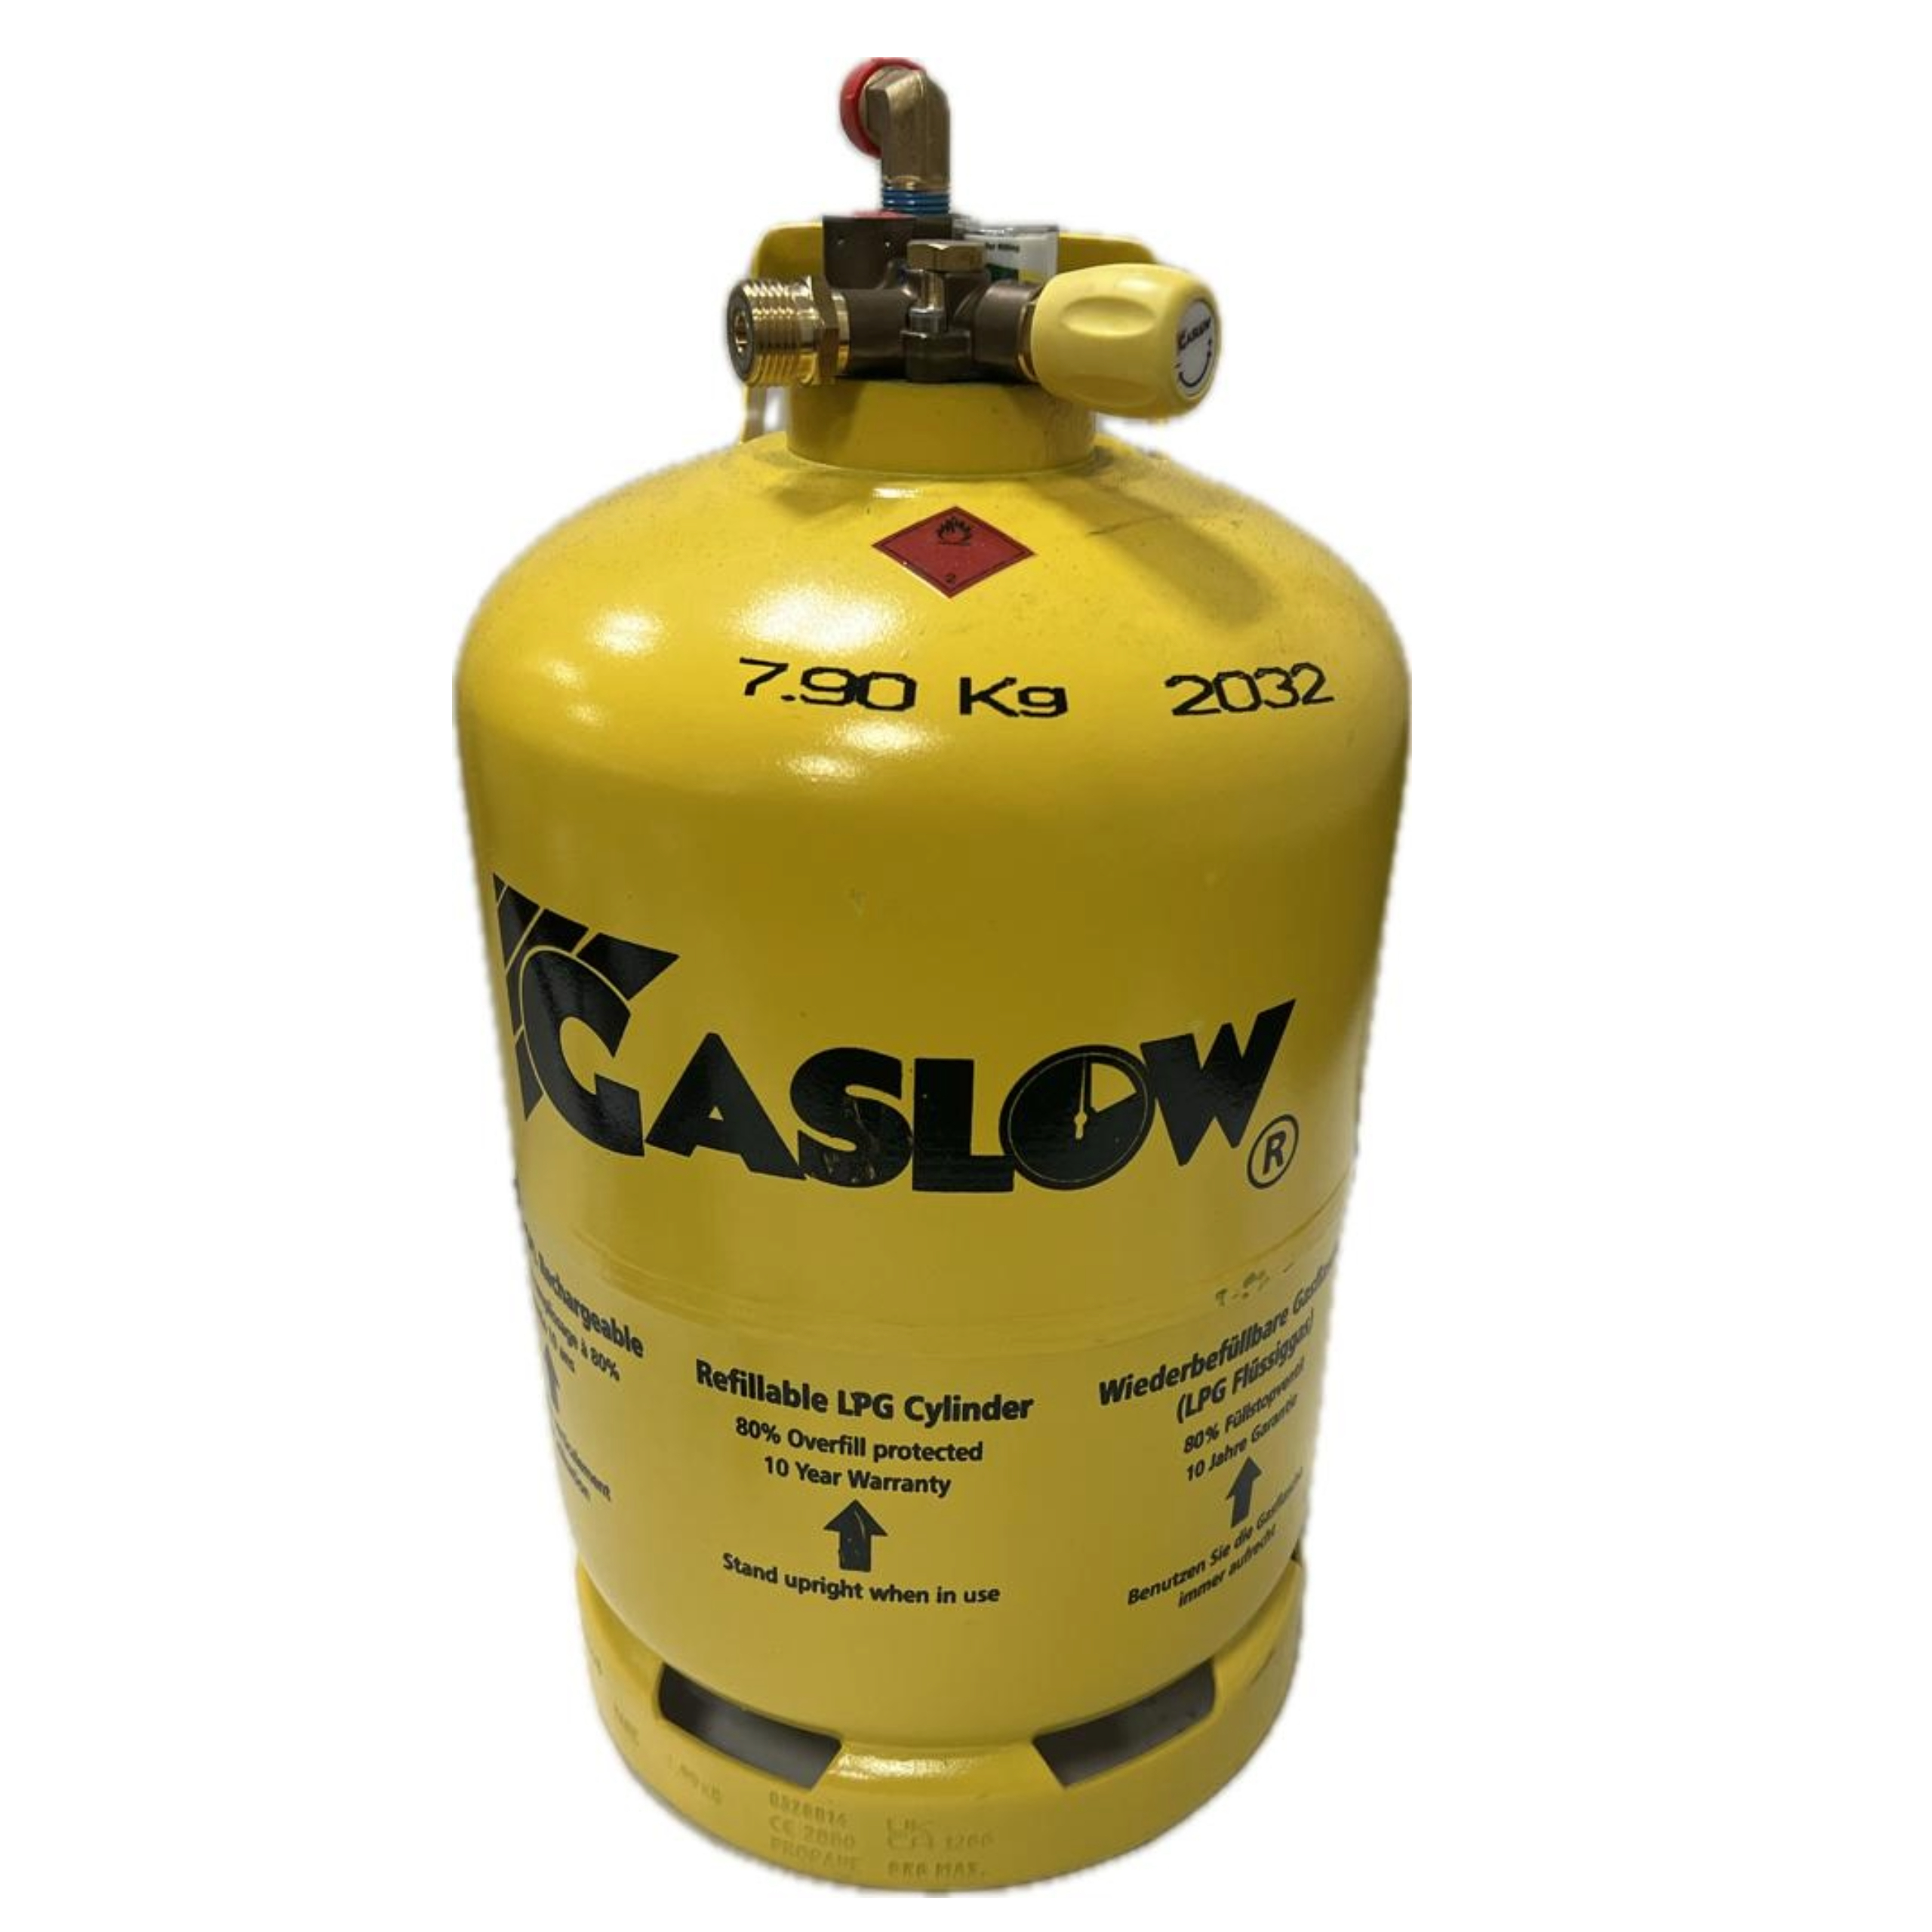 Gasflasche Gaslow 6 kg gelb wiederb. (460x246mm) + Adapter & Einbau